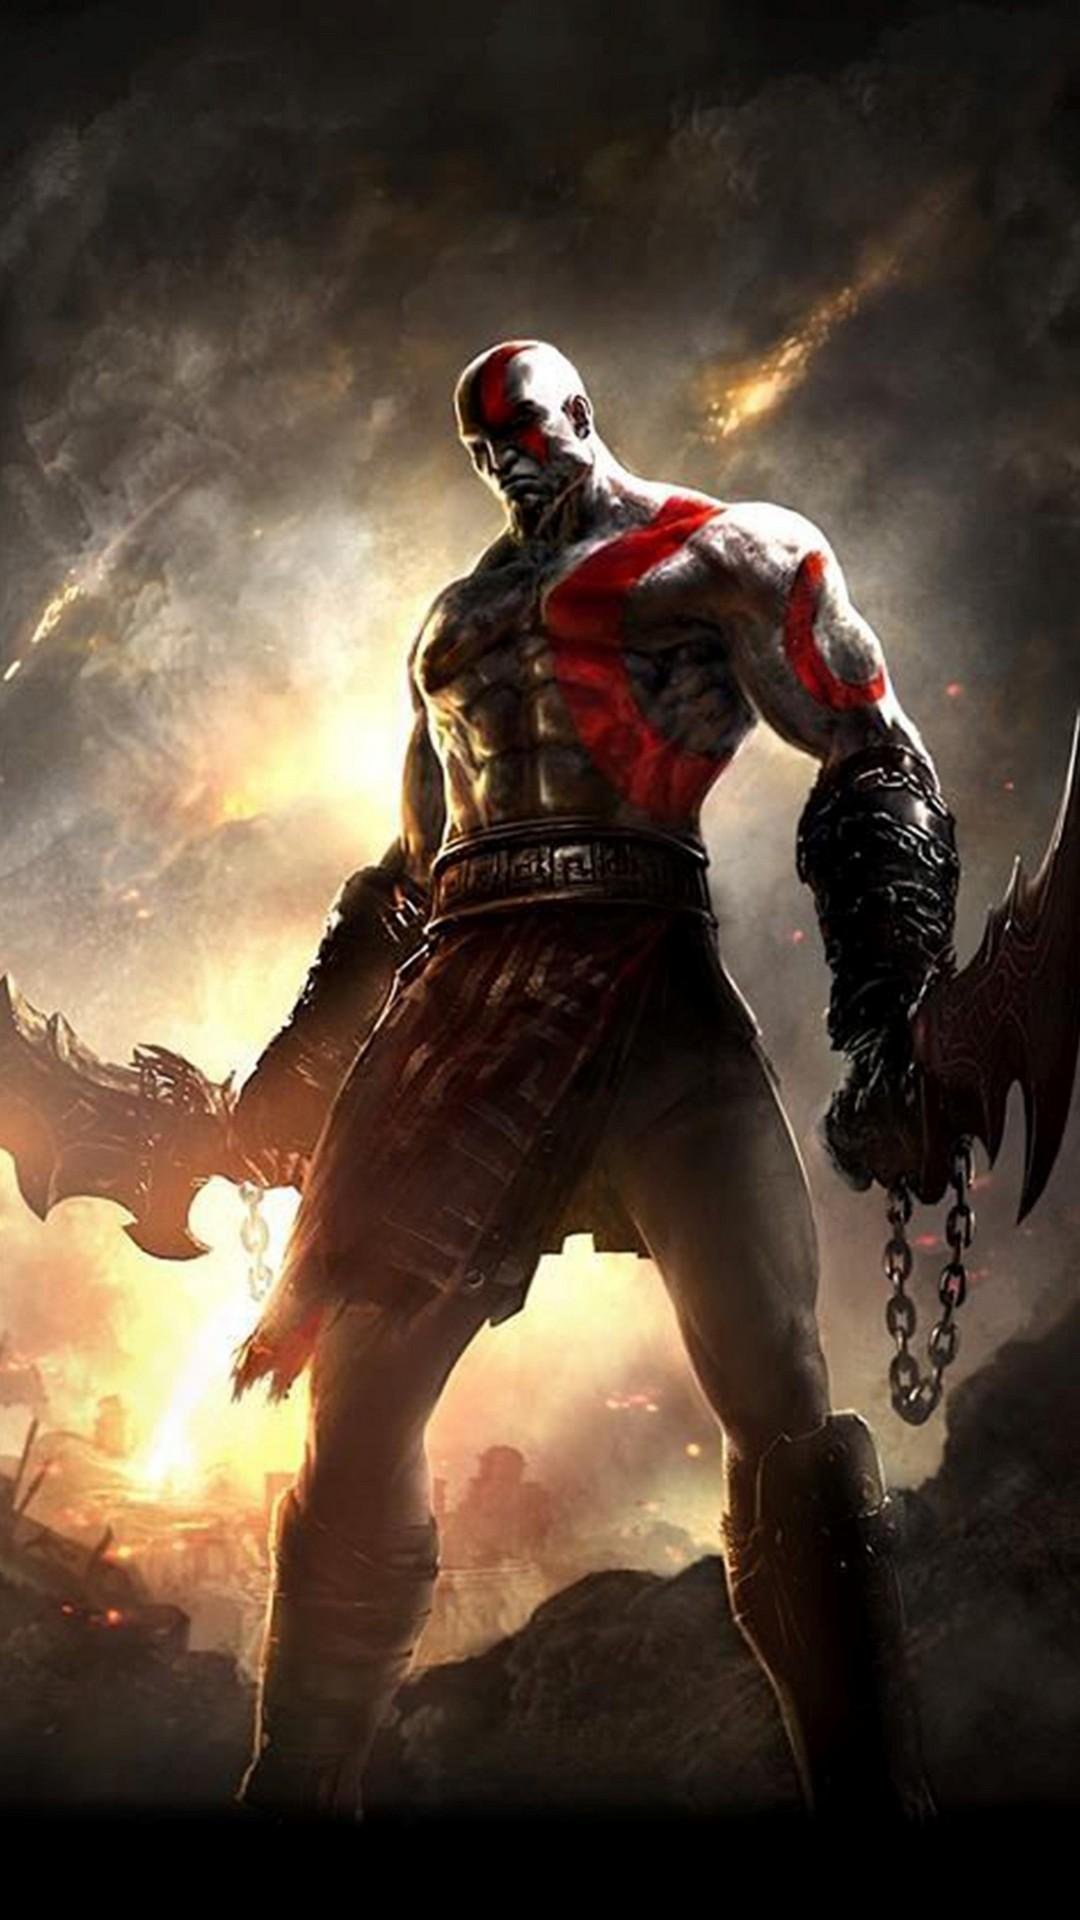 Kratos god of war Wallpapers Download | MobCup